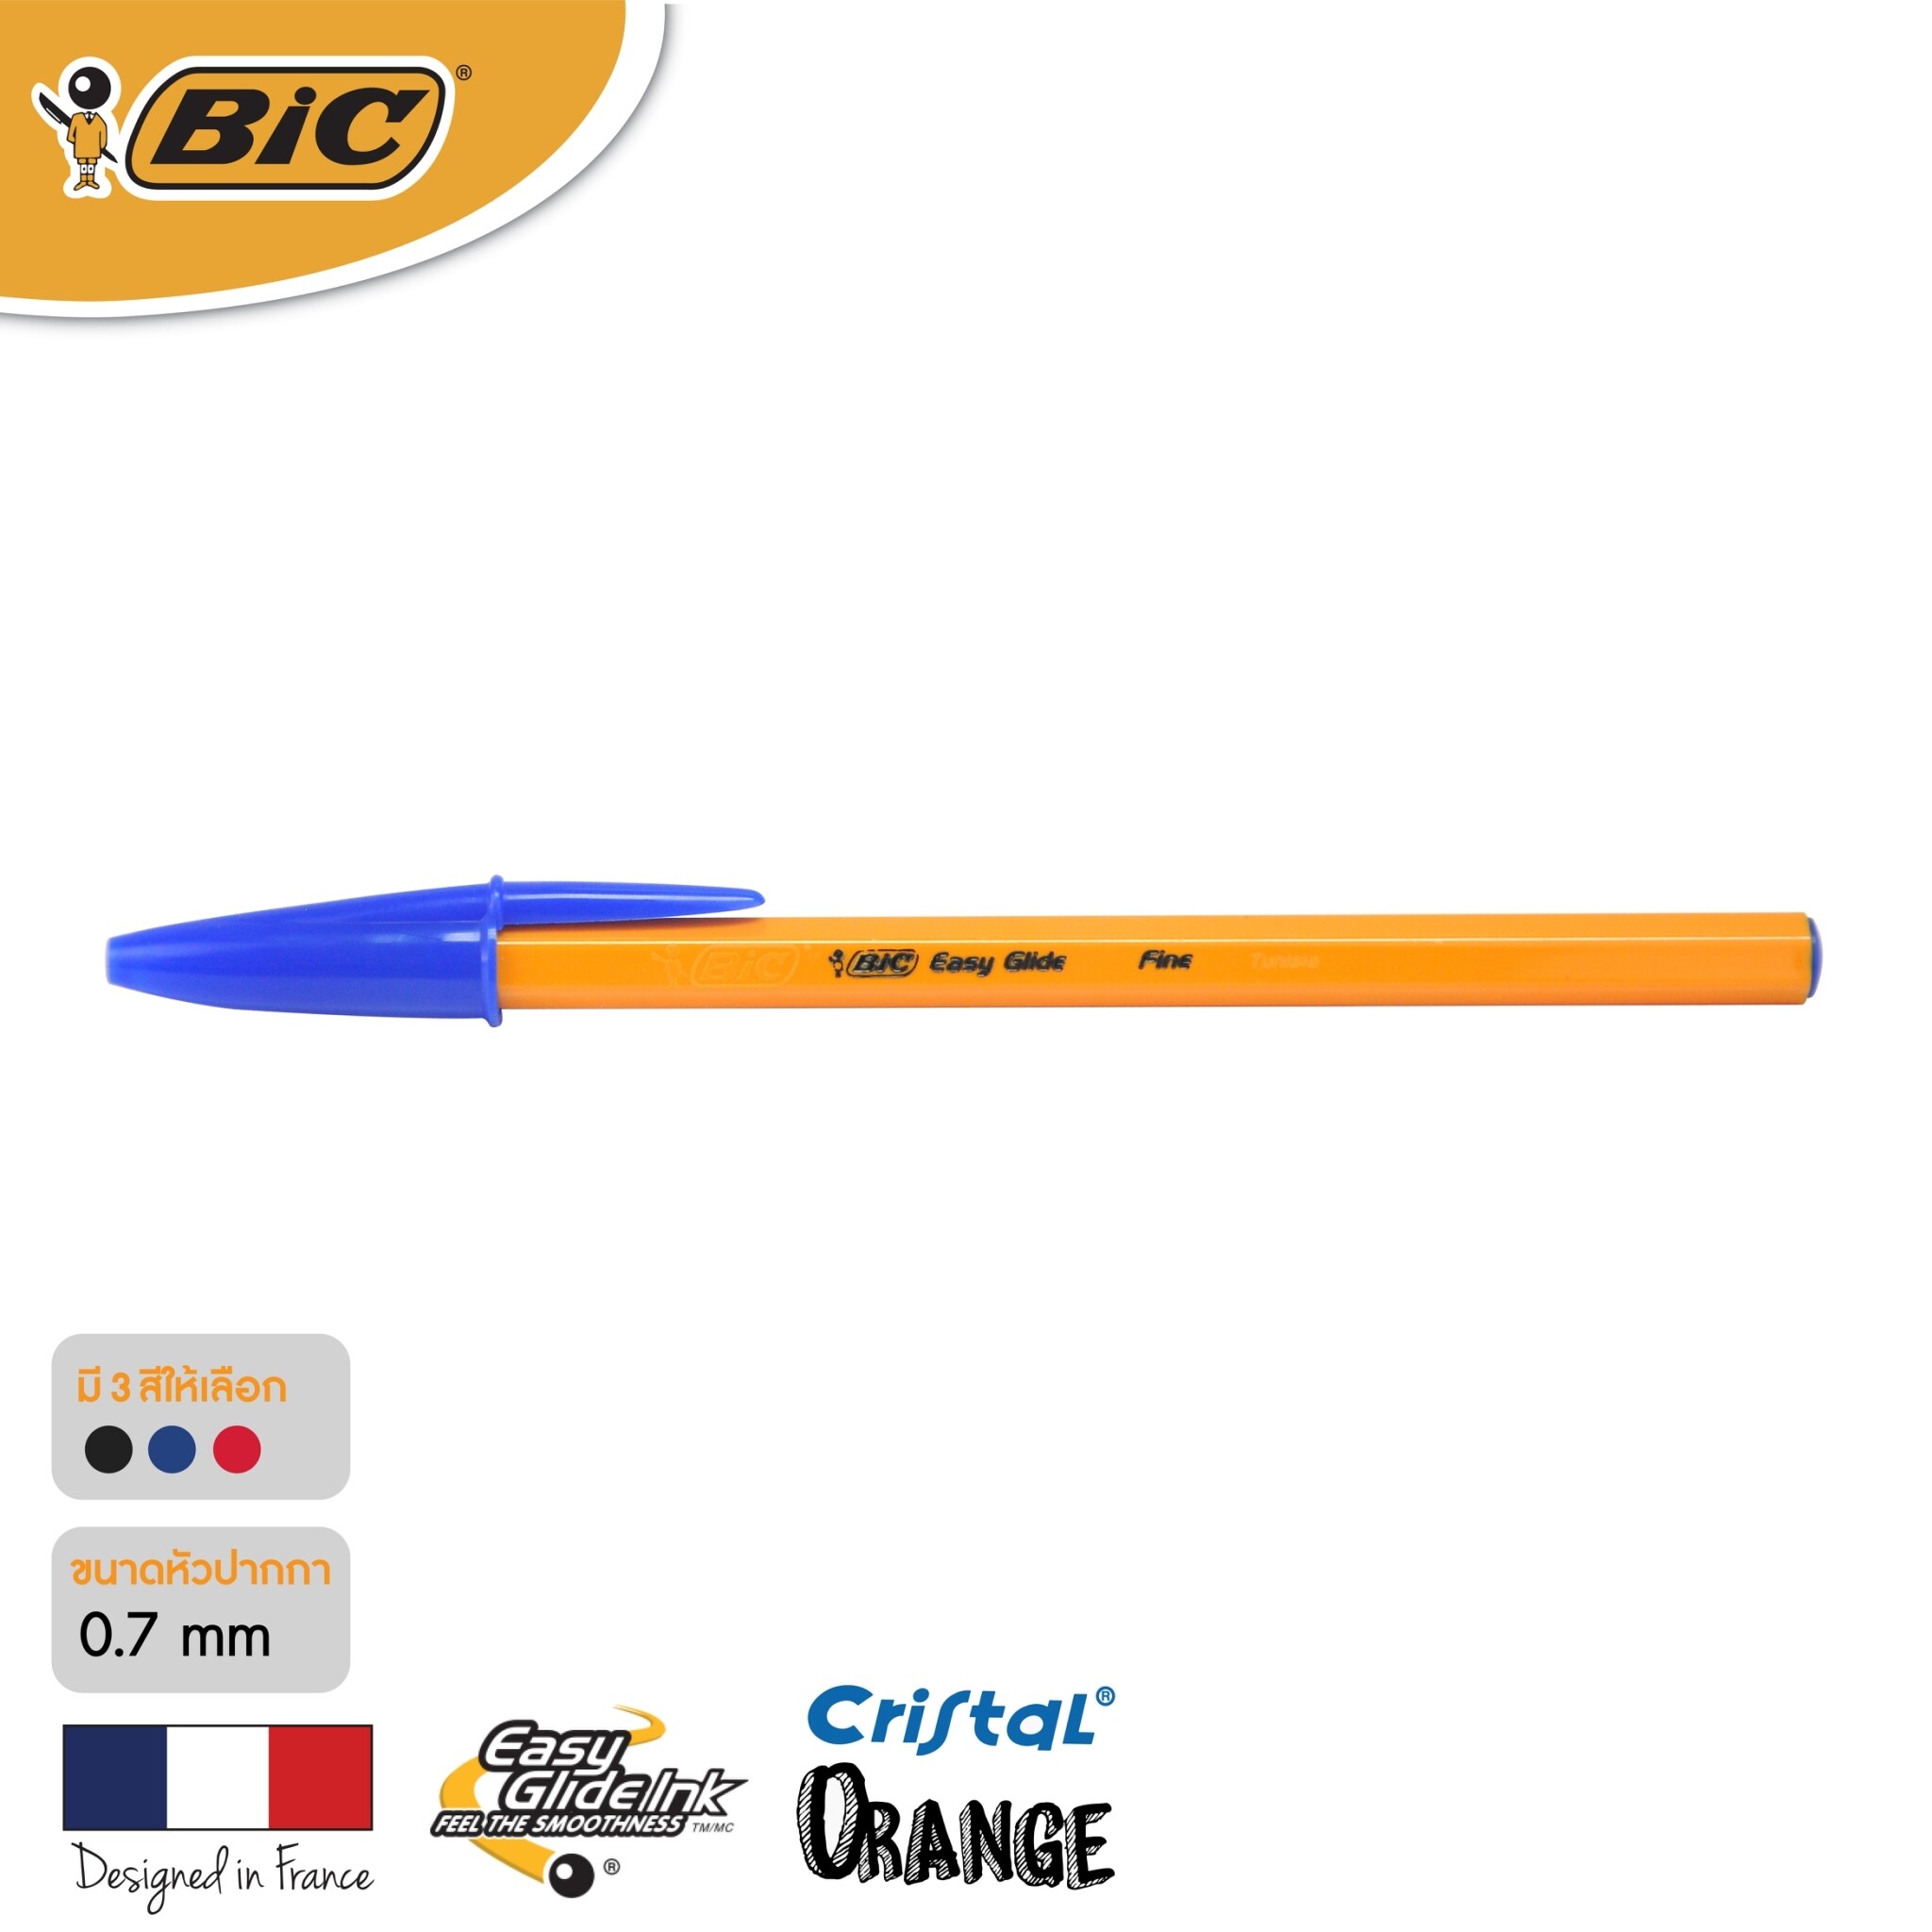 BIC บิ๊ก ปากกา Orange ด้ามส้ม ปากกาลูกลื่น หมึกน้ำเงิน หัวปากกา 0.7 mm. จำนวน 1 ด้าม